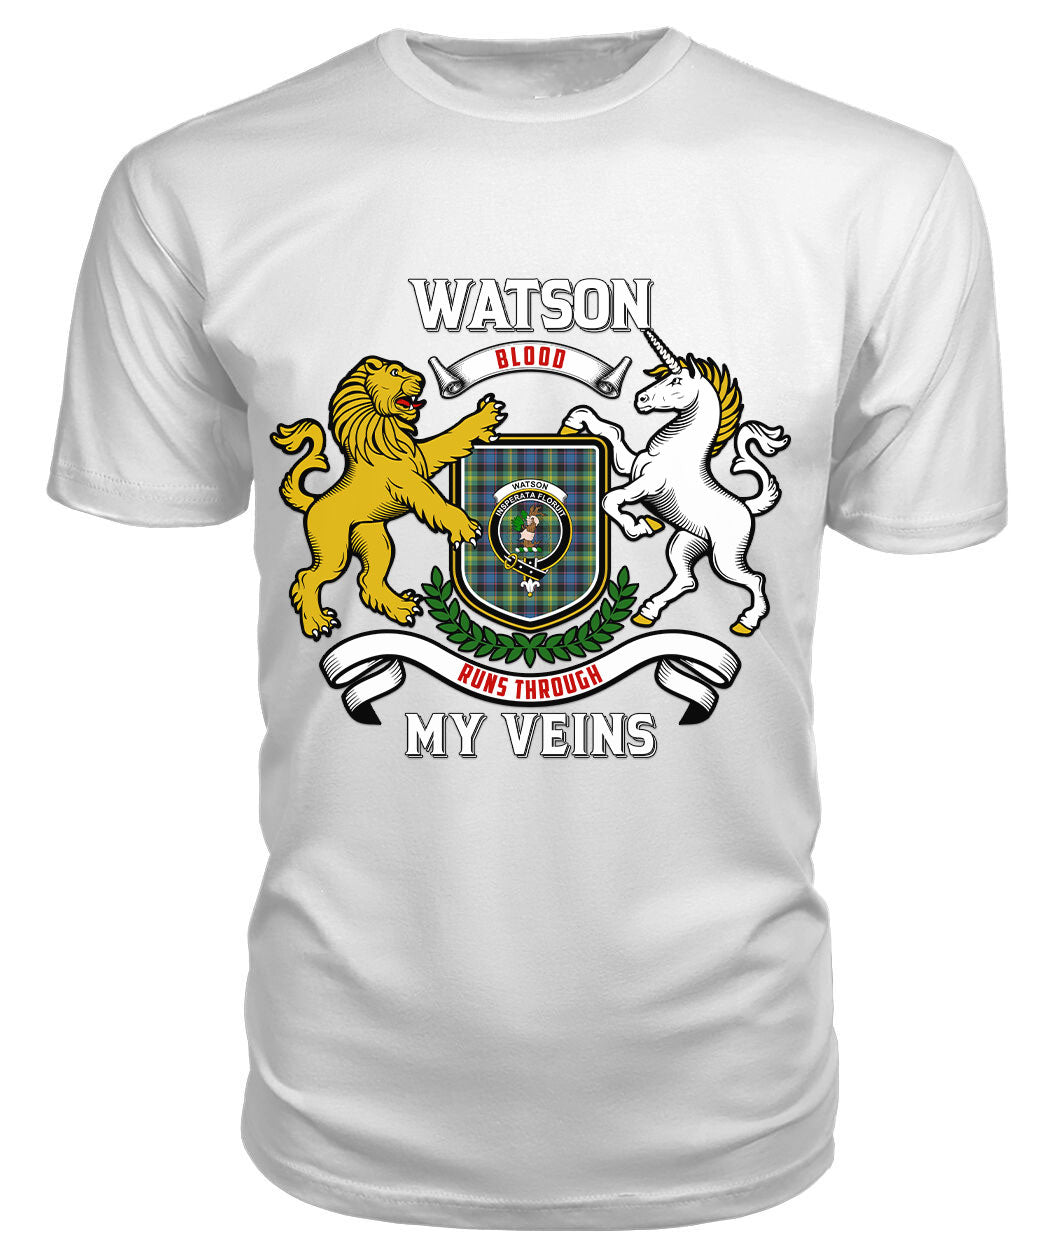 Watson Ancient Tartan Crest 2D T-shirt - Blood Runs Through My Veins Style